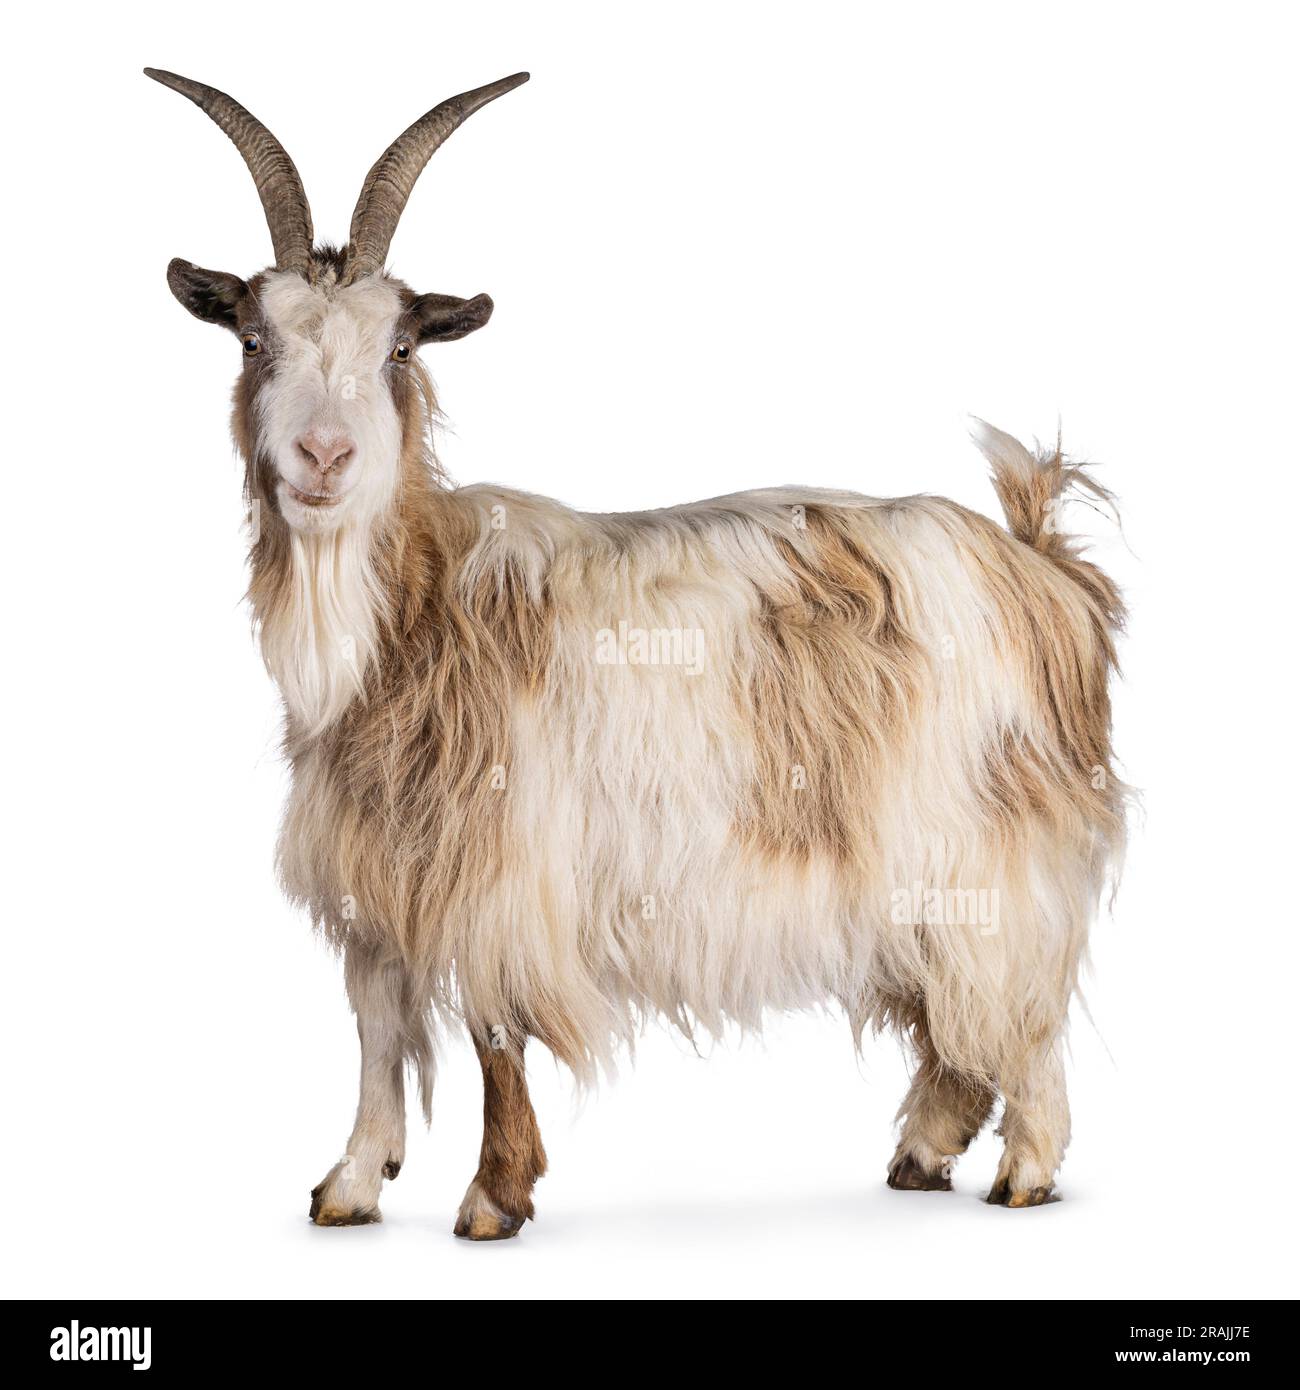 Dolce capra olandese marrone chiaro, in piedi lateralmente. La testa è girata e guarda la fotocamera. Isolato su sfondo bianco. Foto Stock